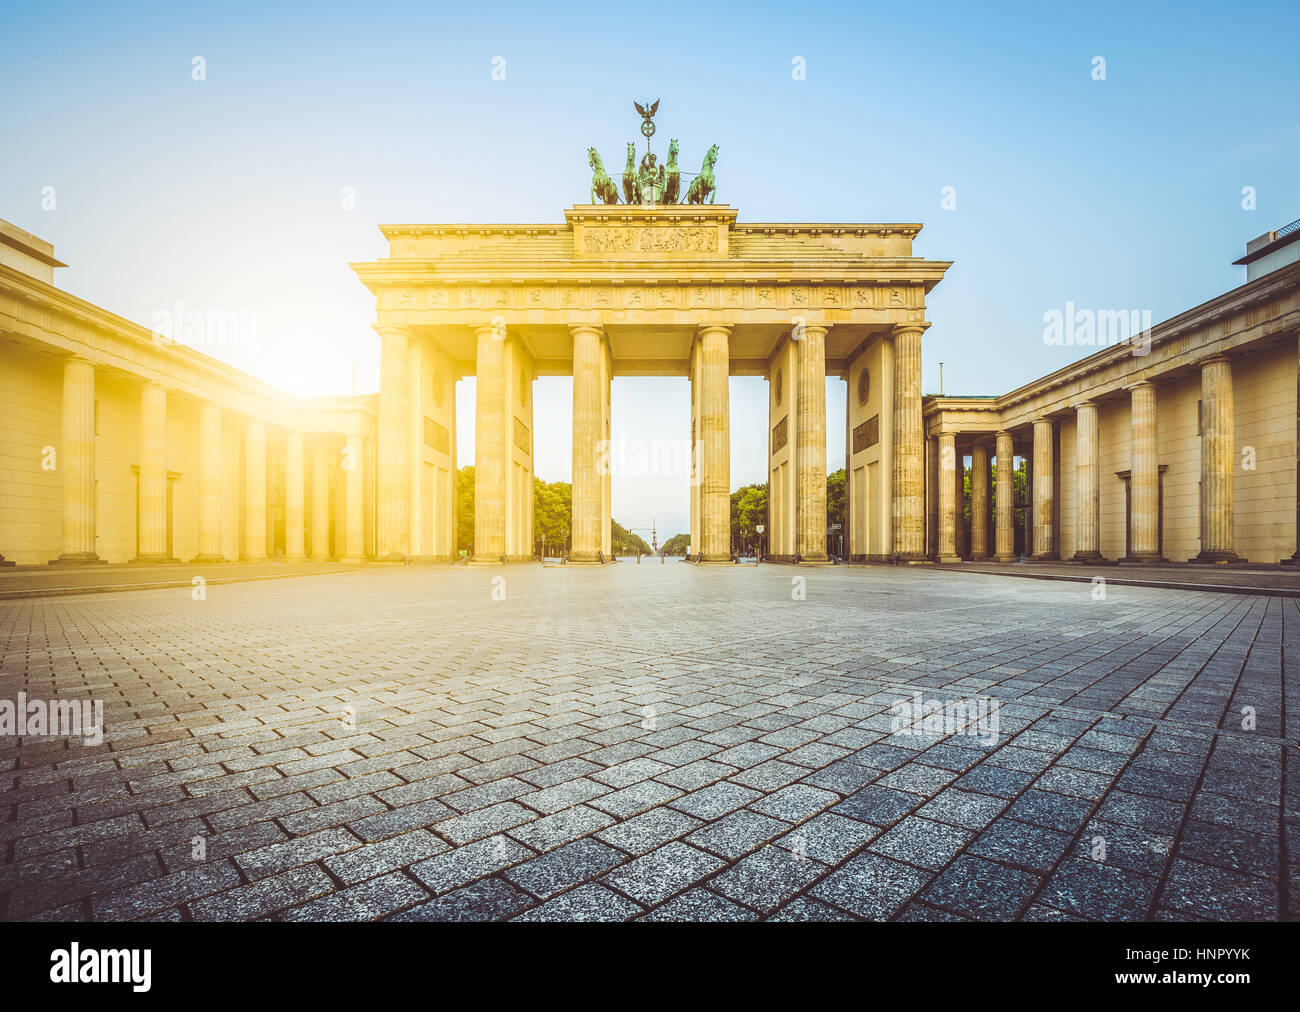 Célèbre Porte de Brandebourg, l'un des plus célèbres monuments et symboles nationaux de l'Allemagne, dans la belle lumière du matin au lever du soleil, Berlin, Allemagne Banque D'Images